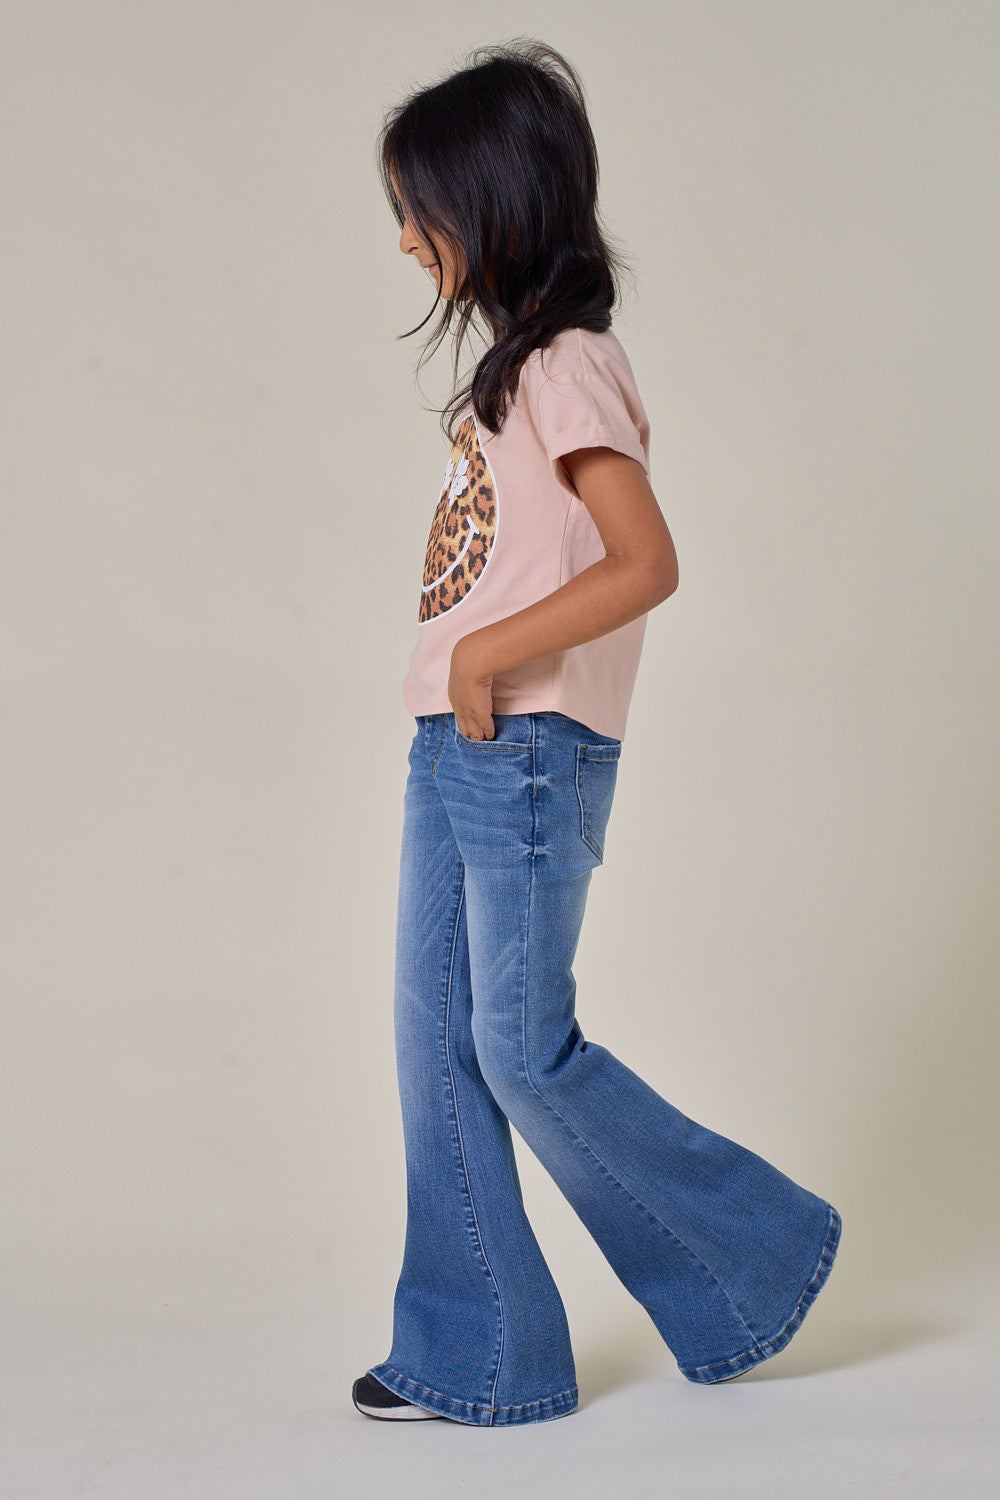 Buy NEON 9 Girls Boyfriend Loose Fit Denim Jeans |Girls Jeans | Jeans | Denim  Jeans | Online at Best Prices in India - JioMart.